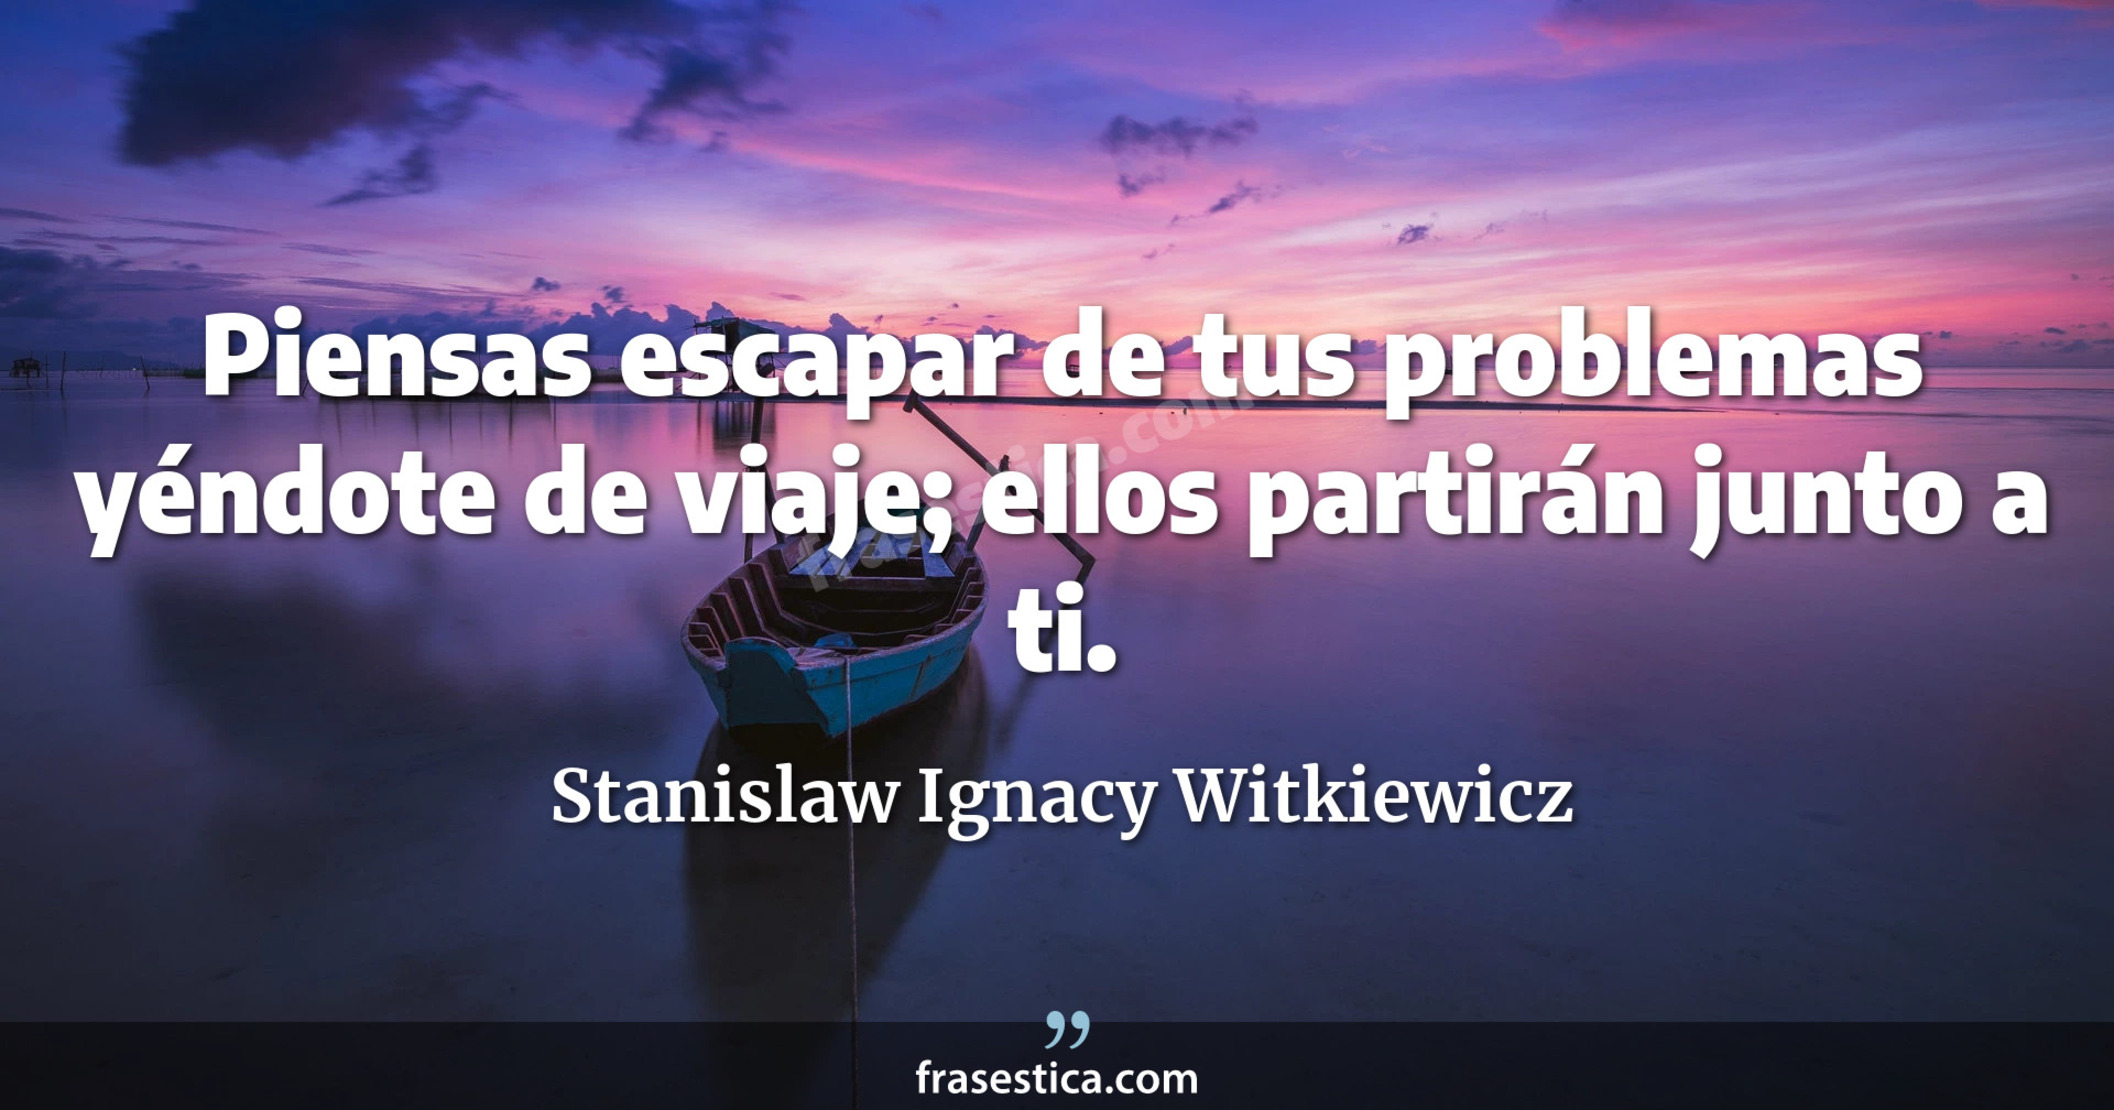 Piensas escapar de tus problemas yéndote de viaje; ellos partirán junto a ti. - Stanislaw Ignacy Witkiewicz